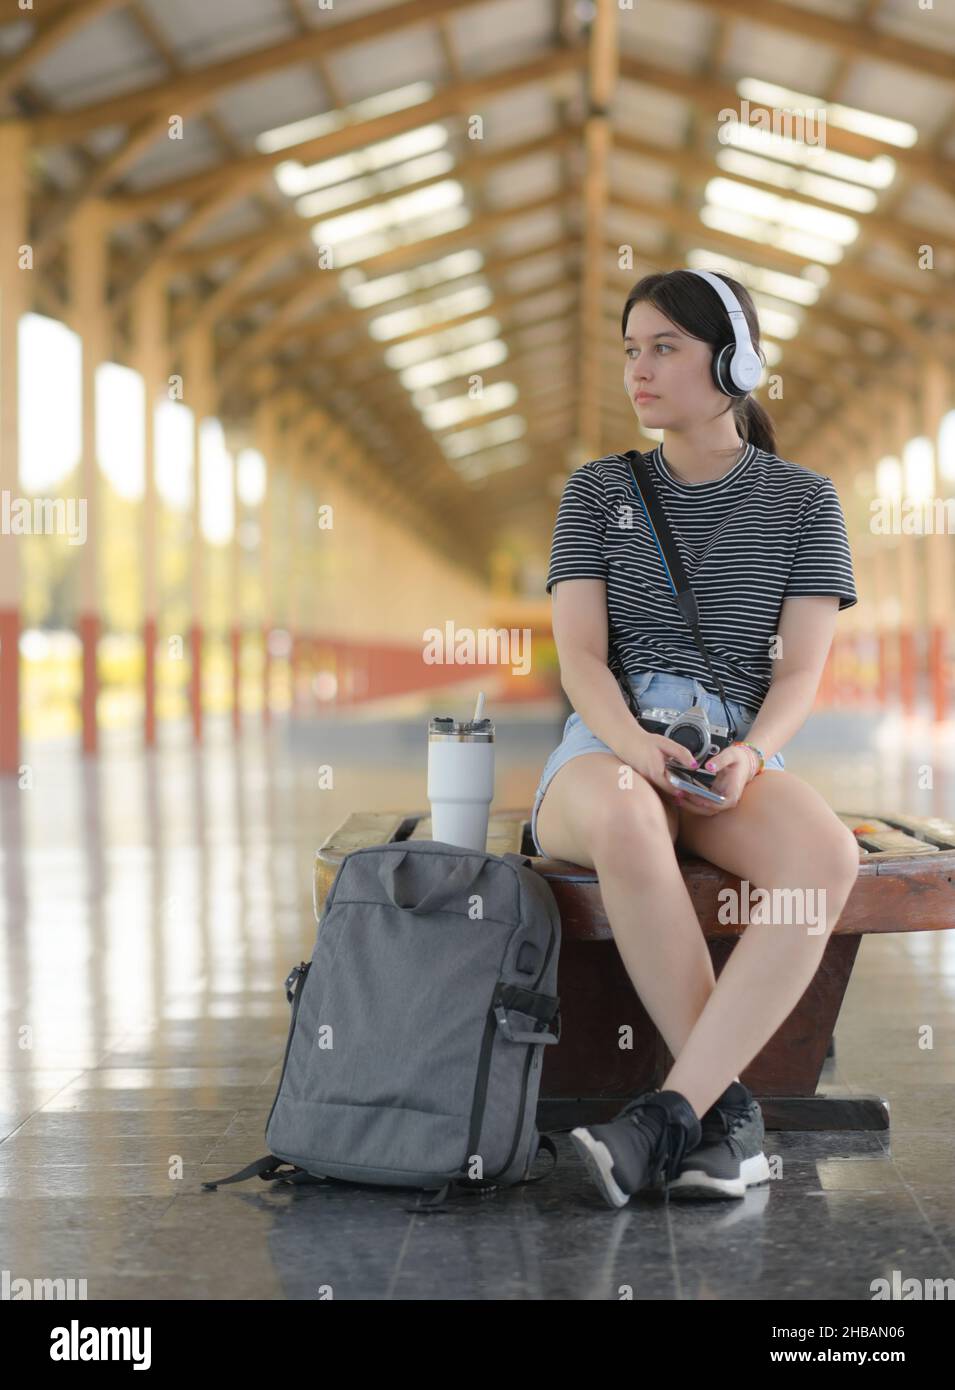 Eine junge Touristenin, die auf einem Bahnsteig Musik hört, eine Kamera trägt und weiße Kopfhörer trägt, um Musik von einer Smartphone-App zu hören Stockfoto